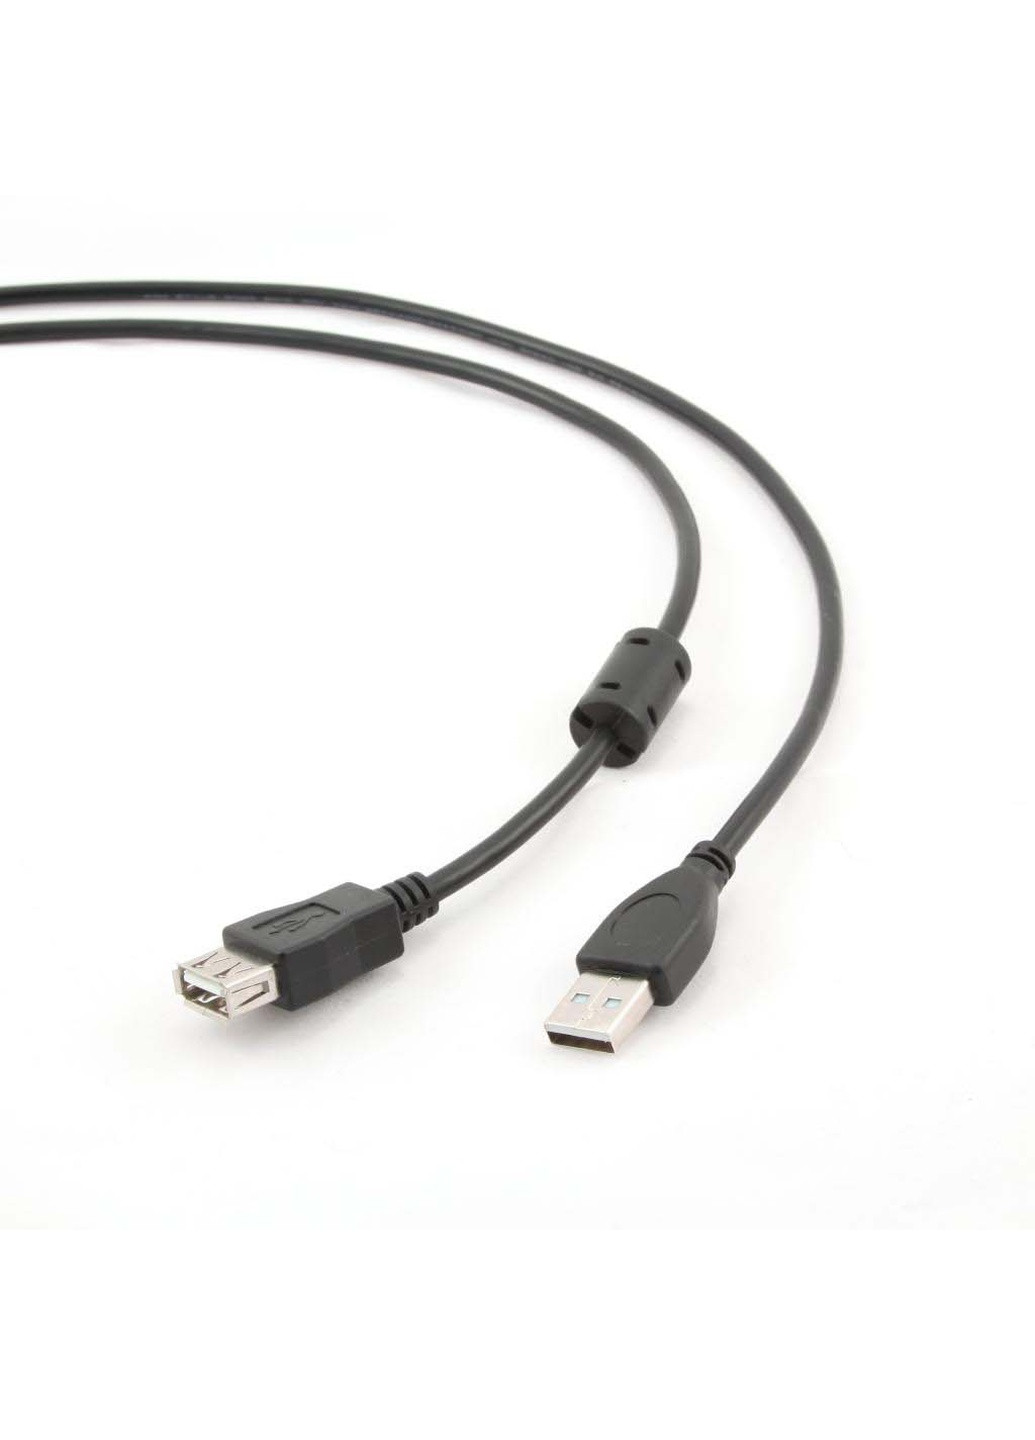 Дата кабель USB 2.0 AM / AF (CCF-USB2-AMAF-6) Cablexpert usb 2.0 am/af (239382921)